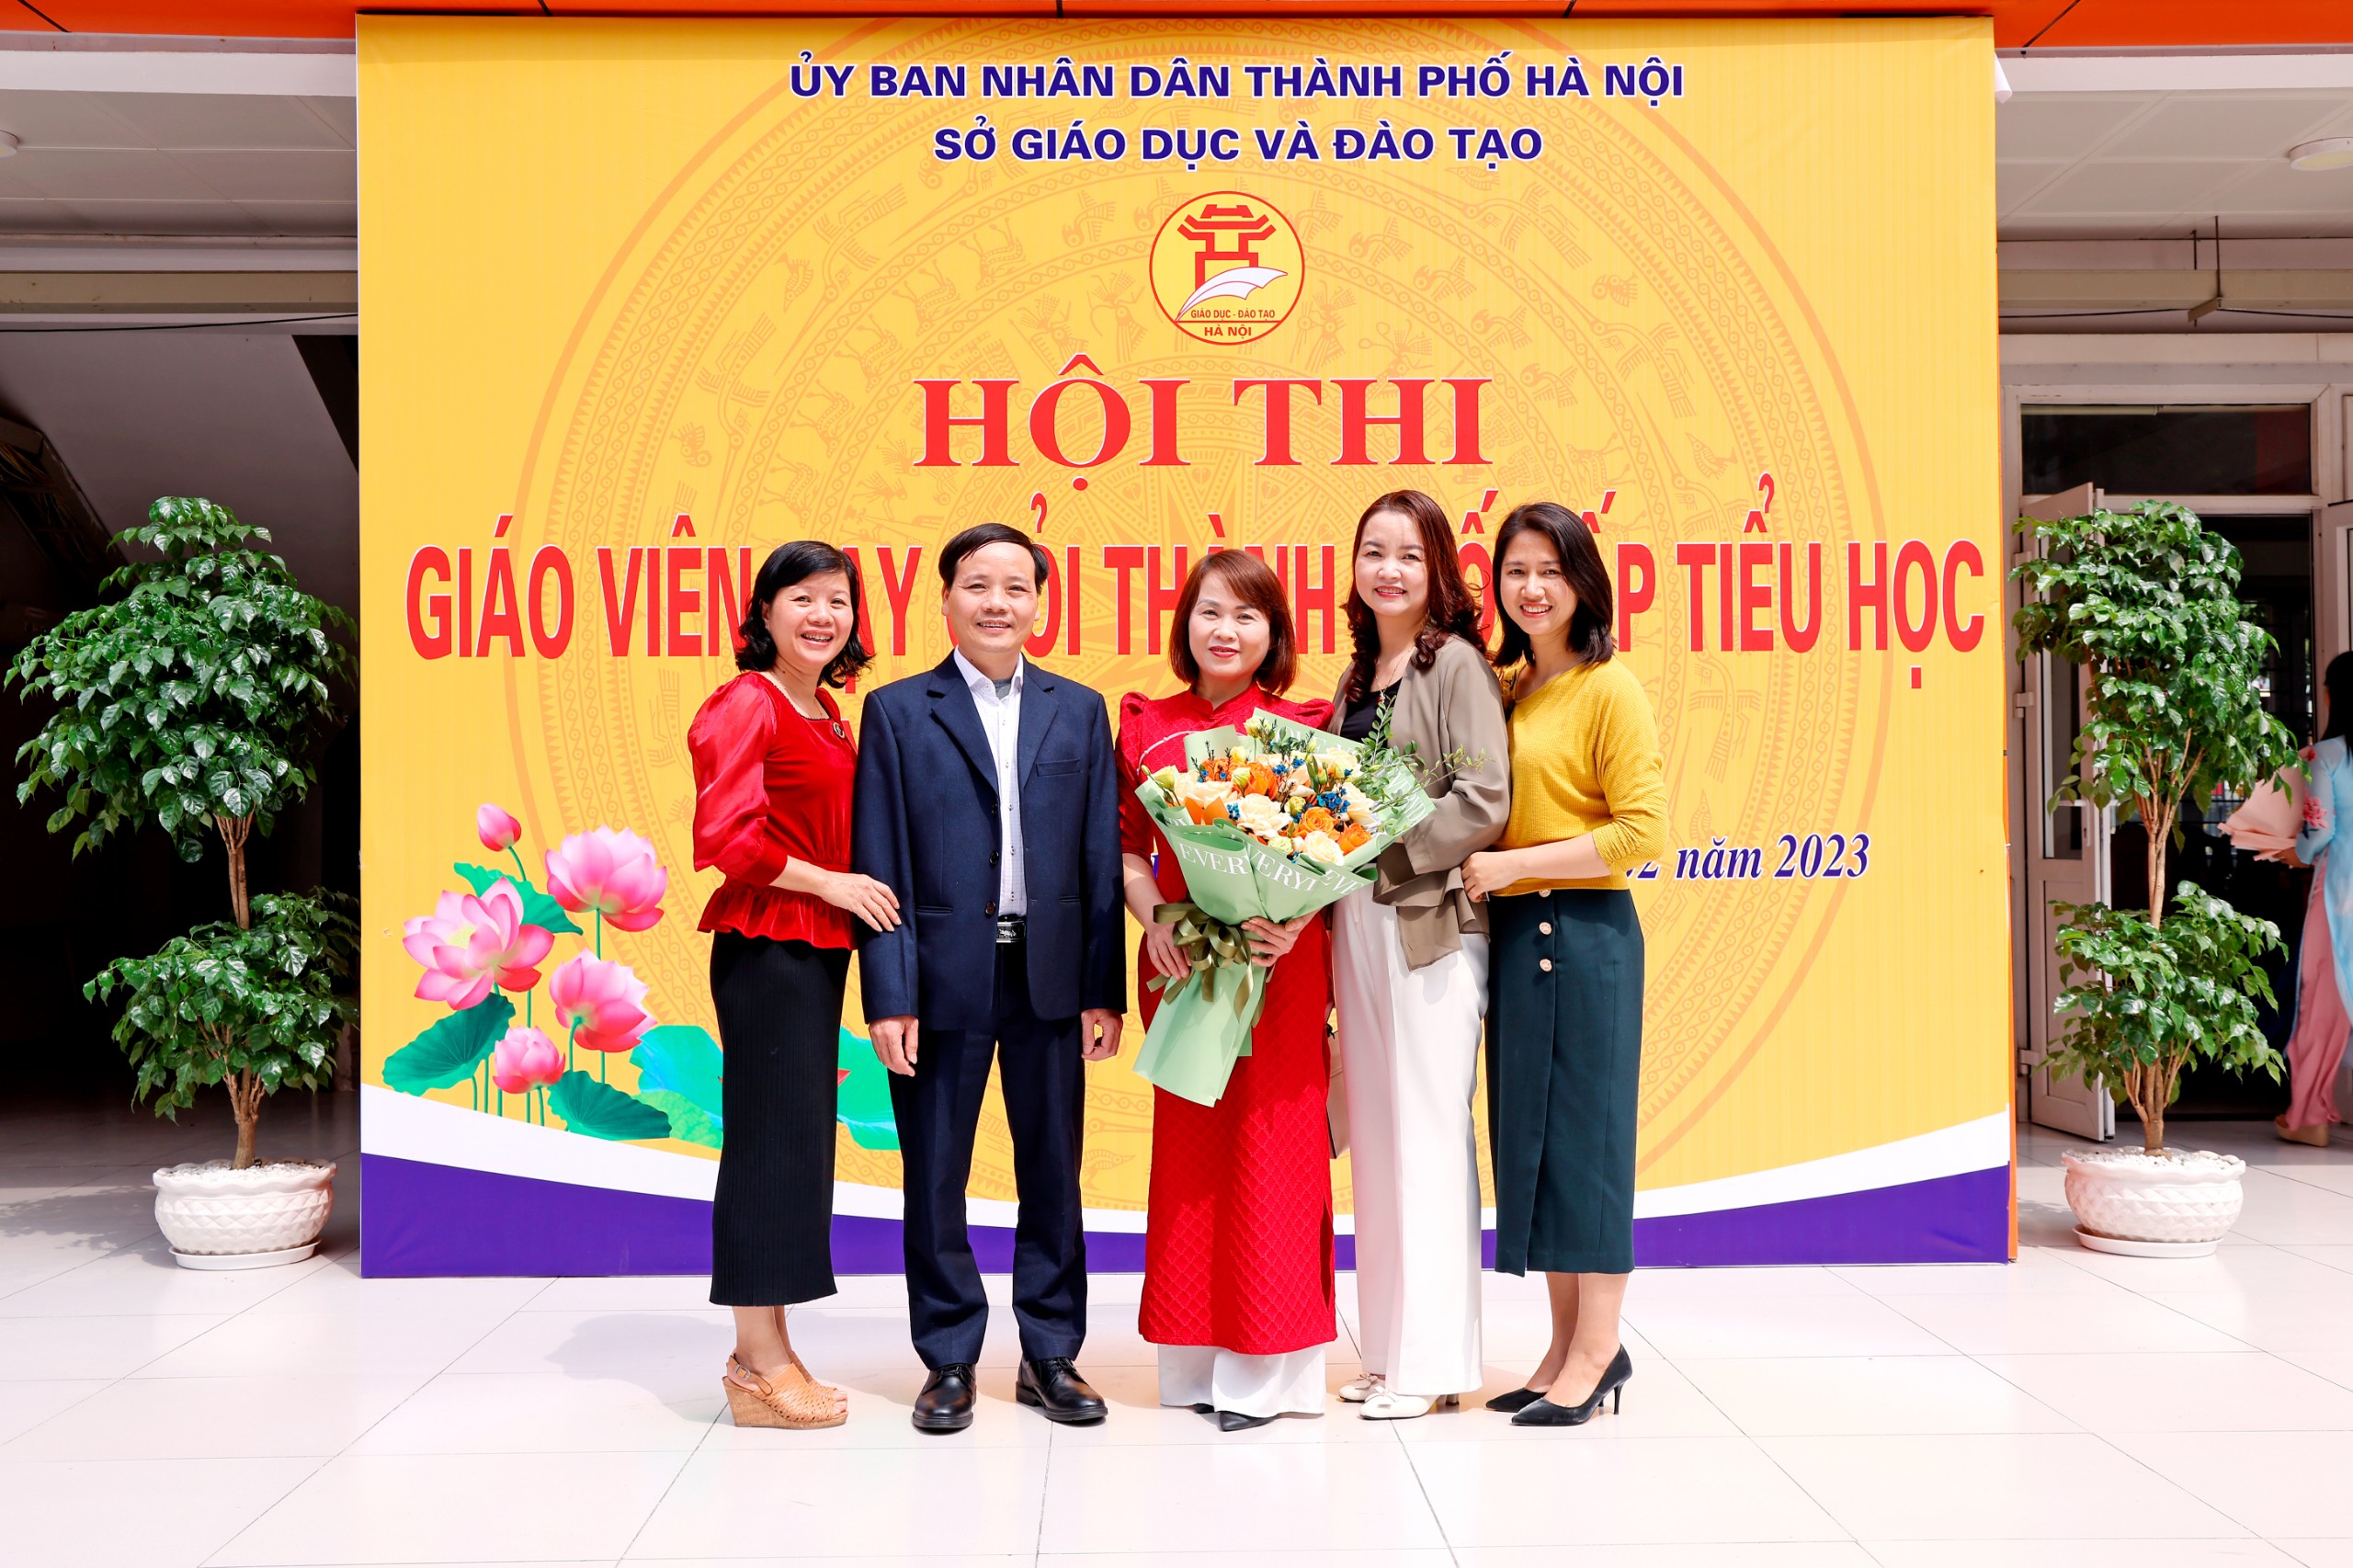 Cô giáo Nguyễn Thị Yên - Giáo viên Tiếng Anh trường TH Vân Canh đã tham dự hội thi GVG TP Hà Nội năm học 2022 - 2023